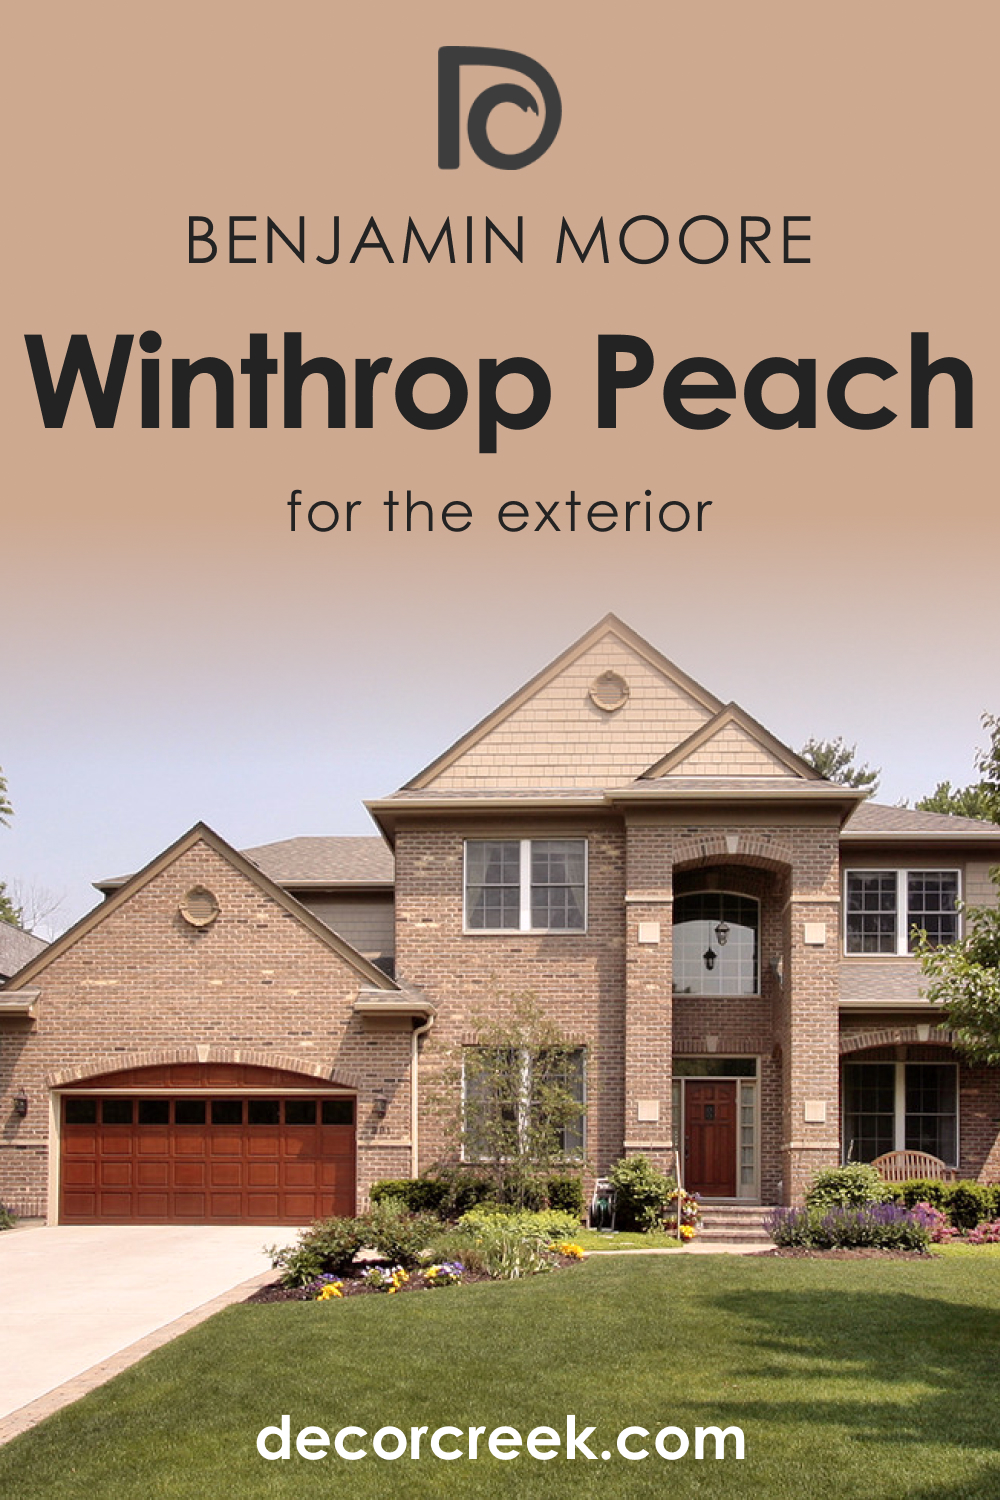 Winthrop Peach HC-55 for an Exterior